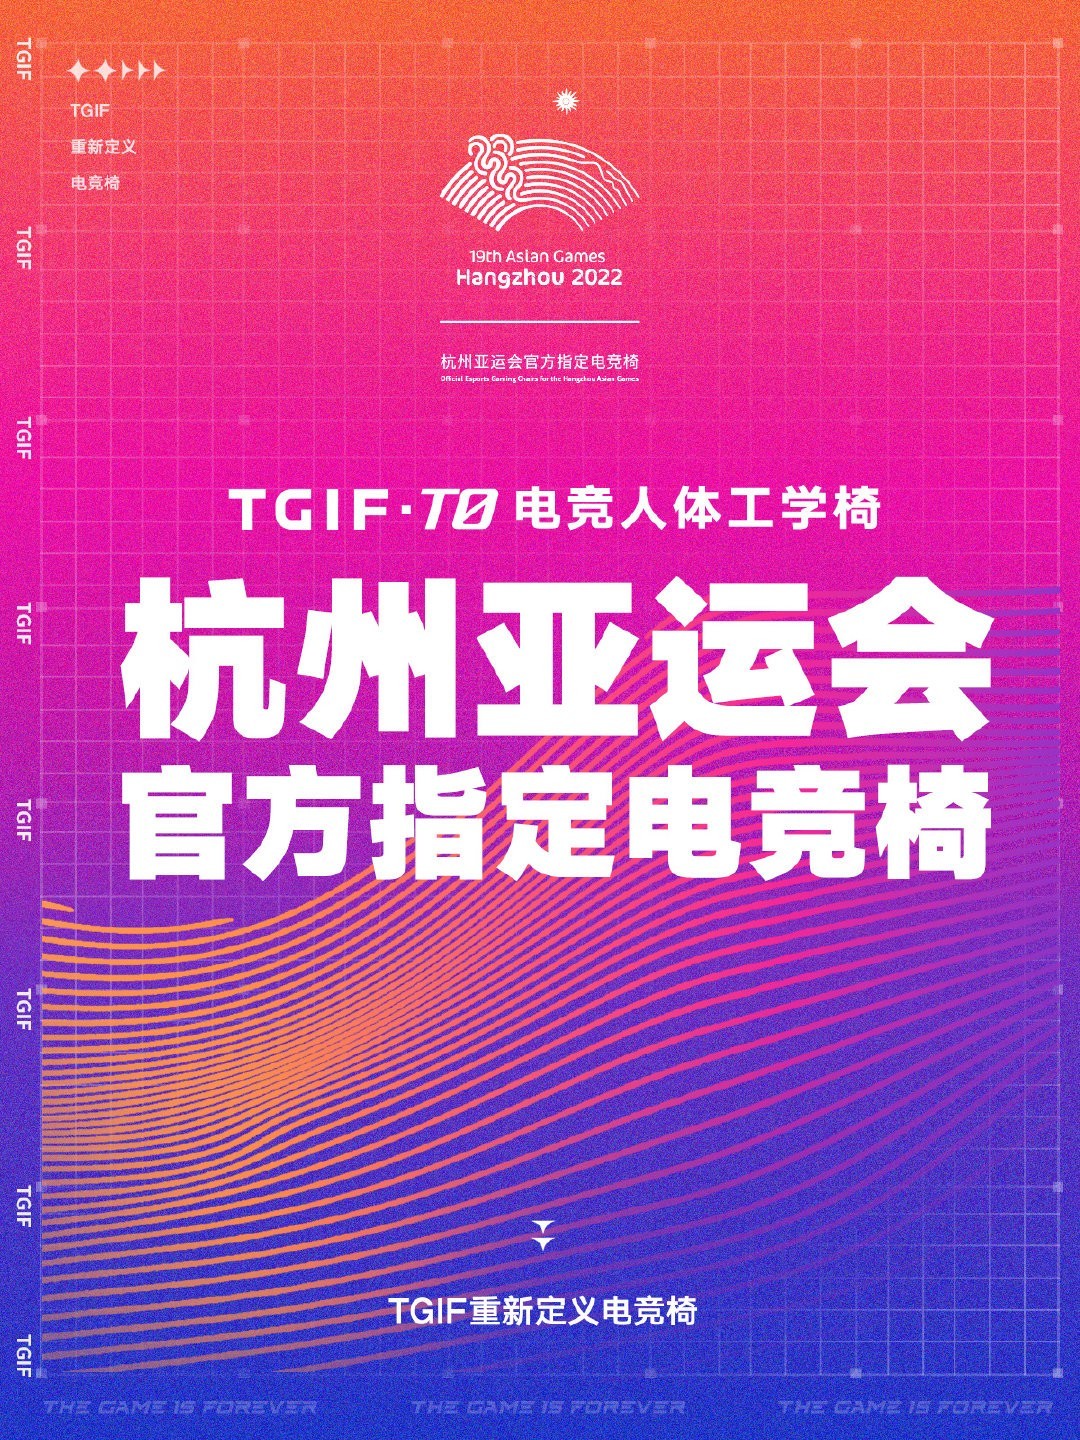 TGIF成为杭州亚运会官方电竞椅供应商